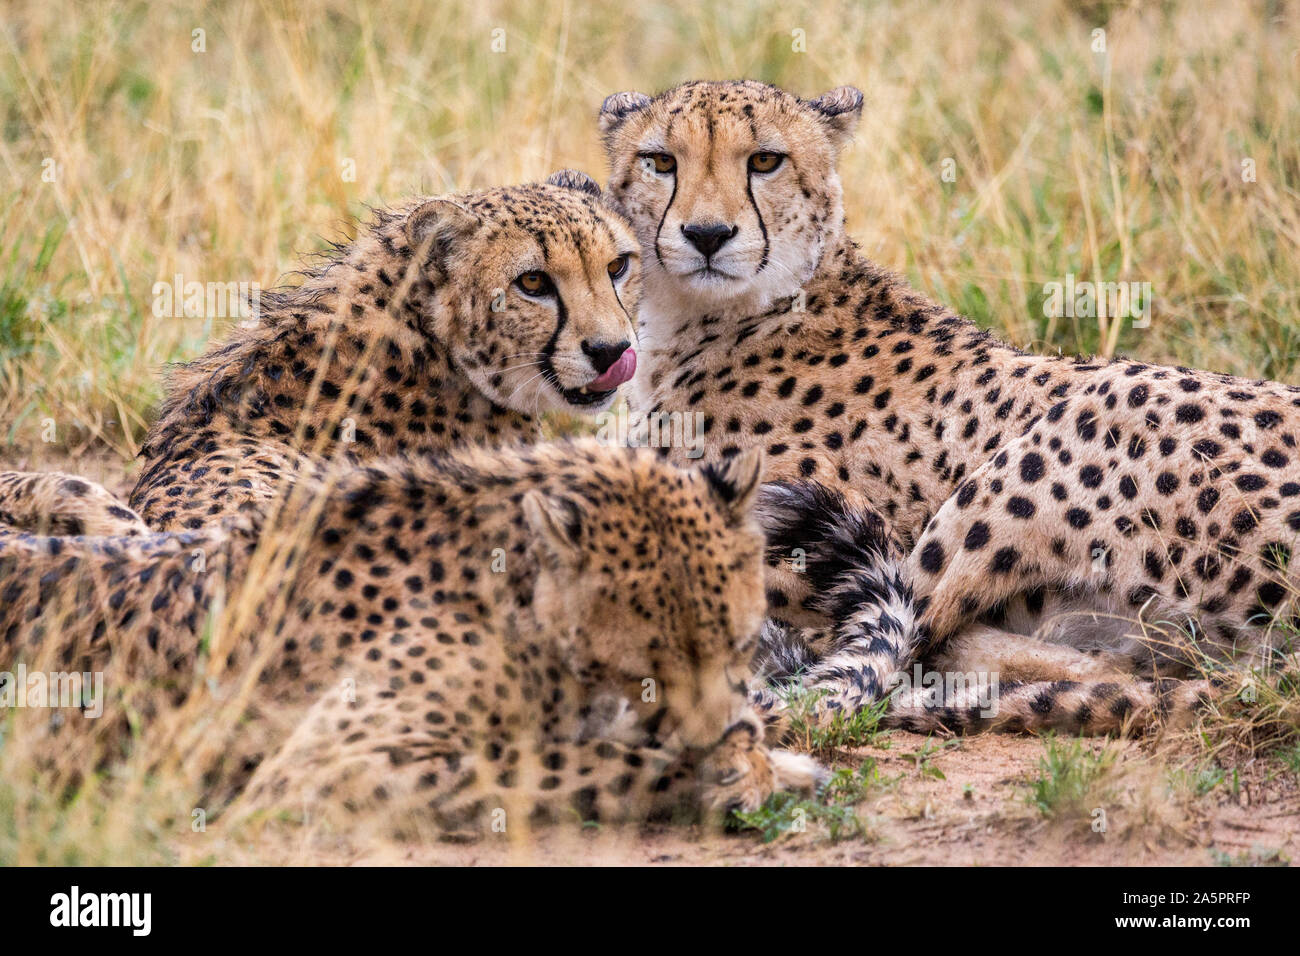 Trois guépards se coucher dans l'herbe, l'une lèche son nez, Namibie, Afrique Banque D'Images